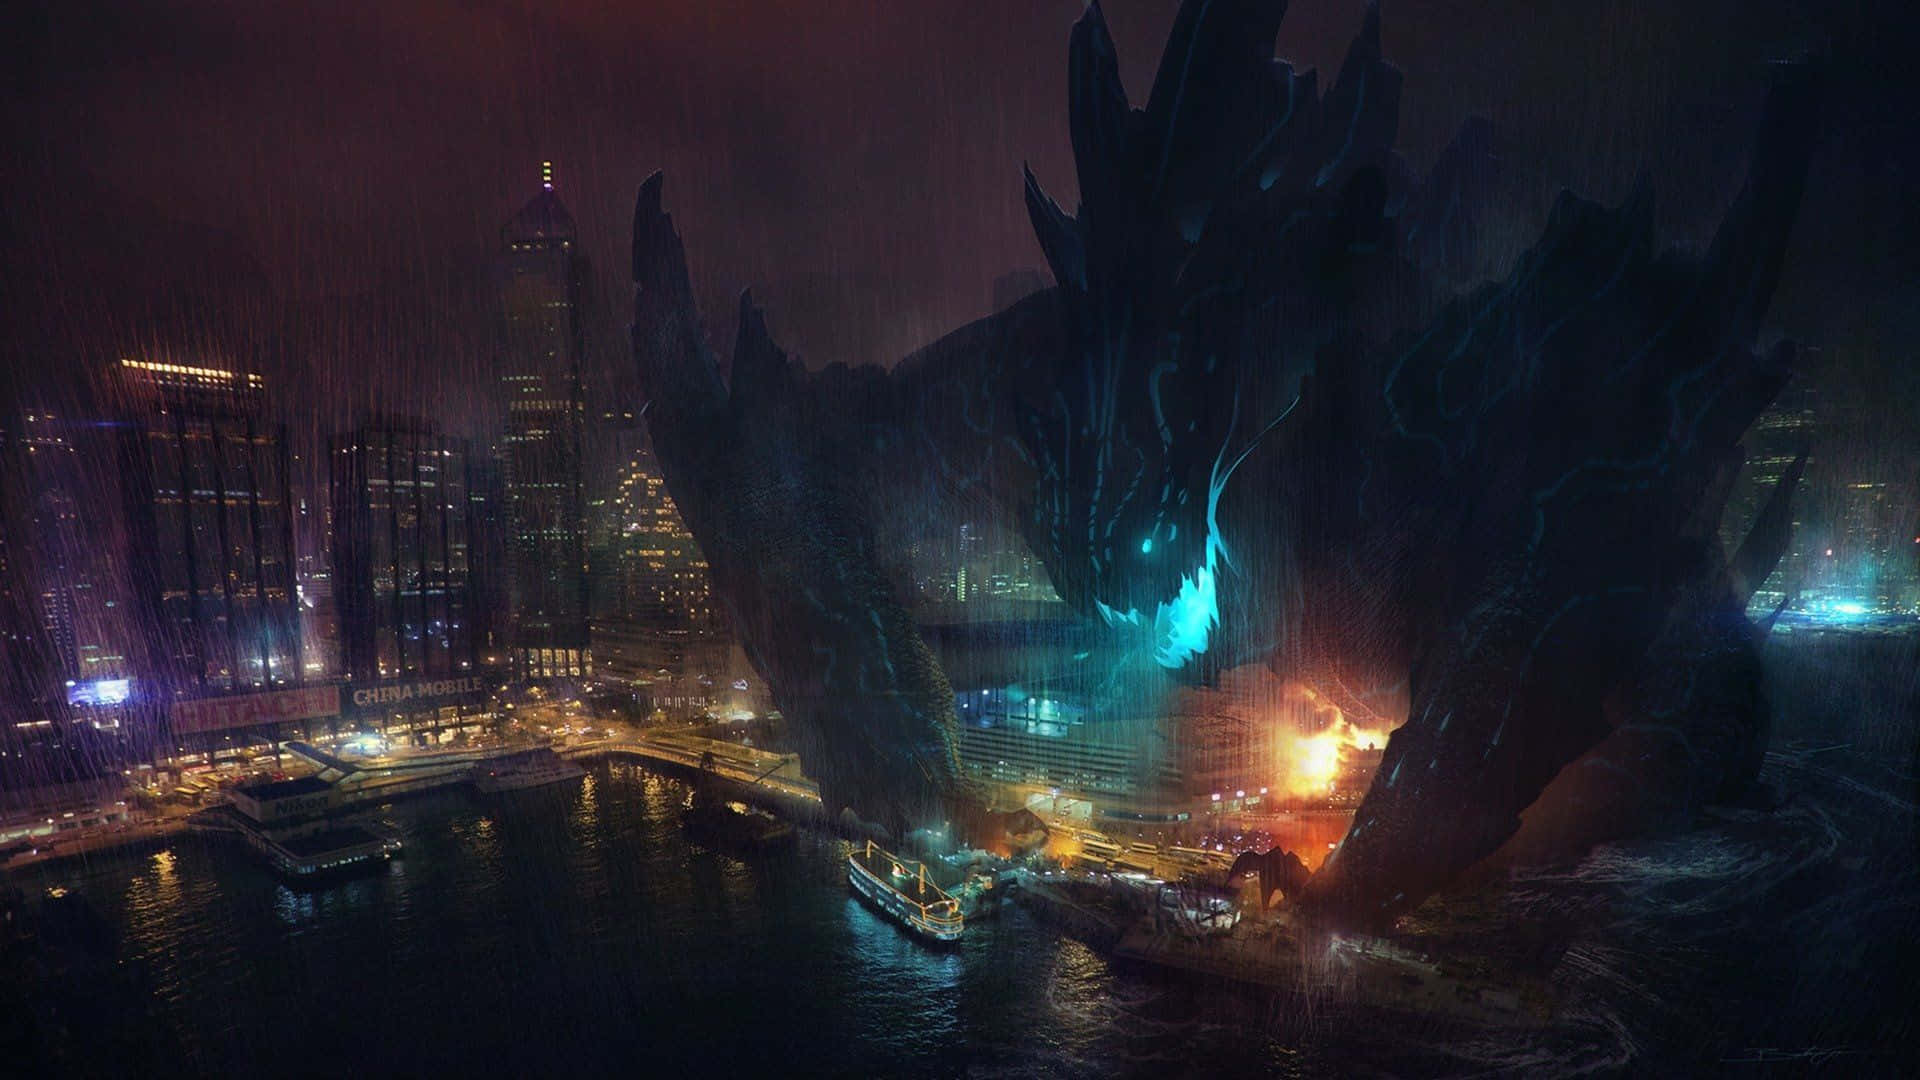 Caption: An Intense Battle of Kaiju Giants Wallpaper